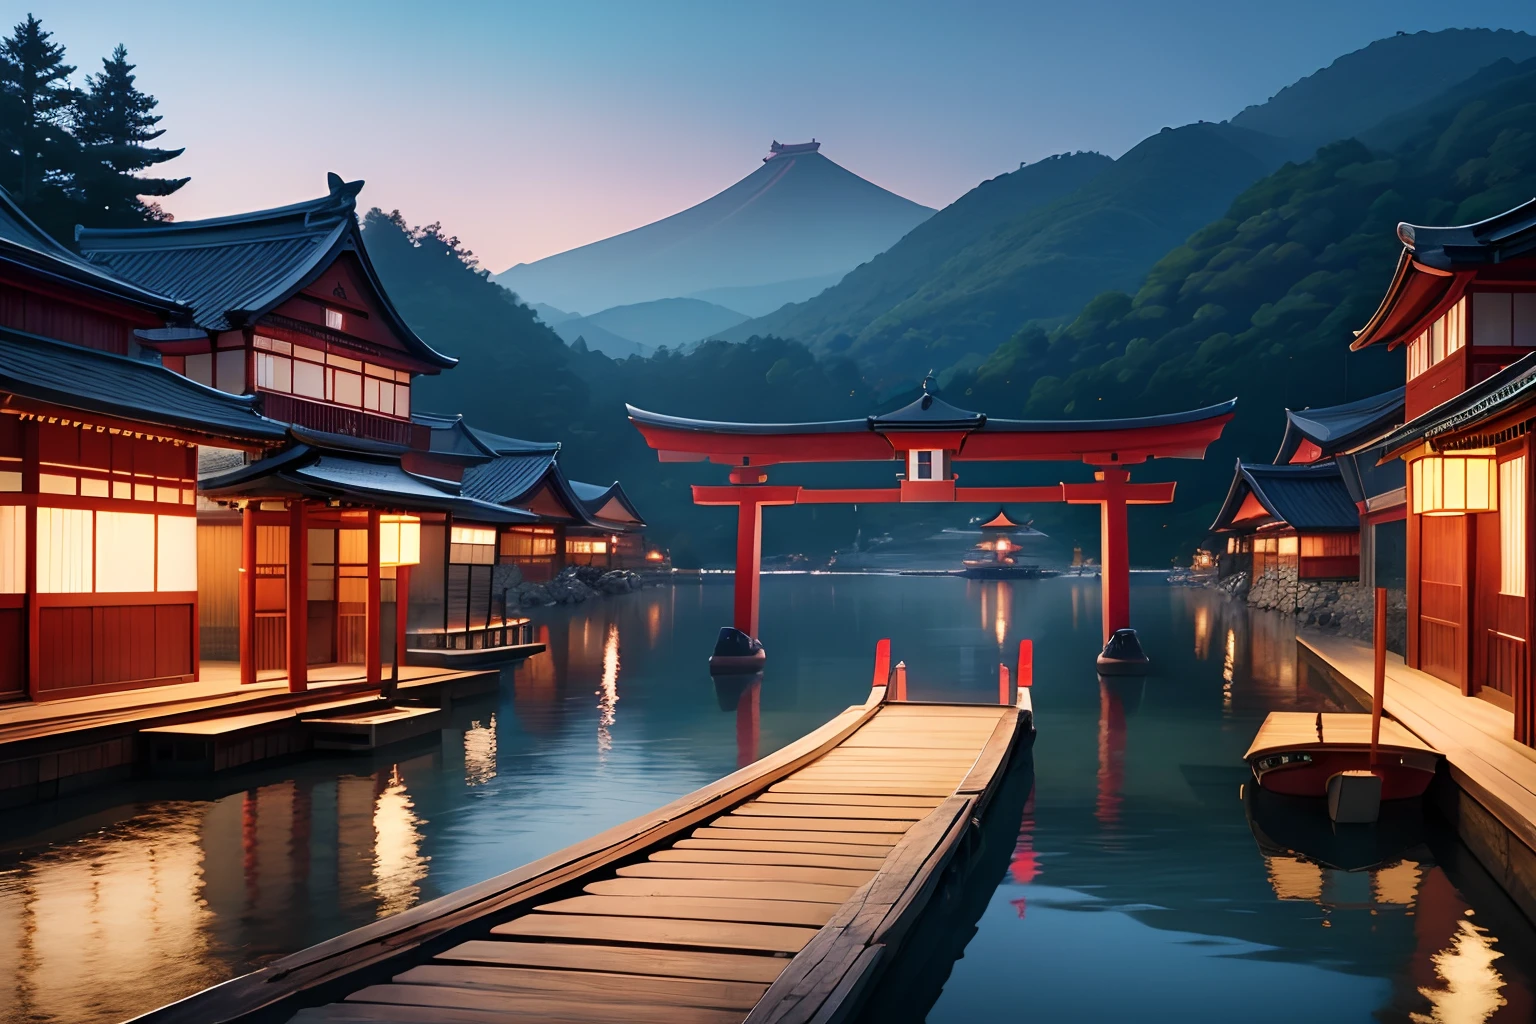 물 위에 떠 있는 마을, 중세 일본, 토리 준비, 풍경, 파노라마, 8K, 상세한, 최고 품질